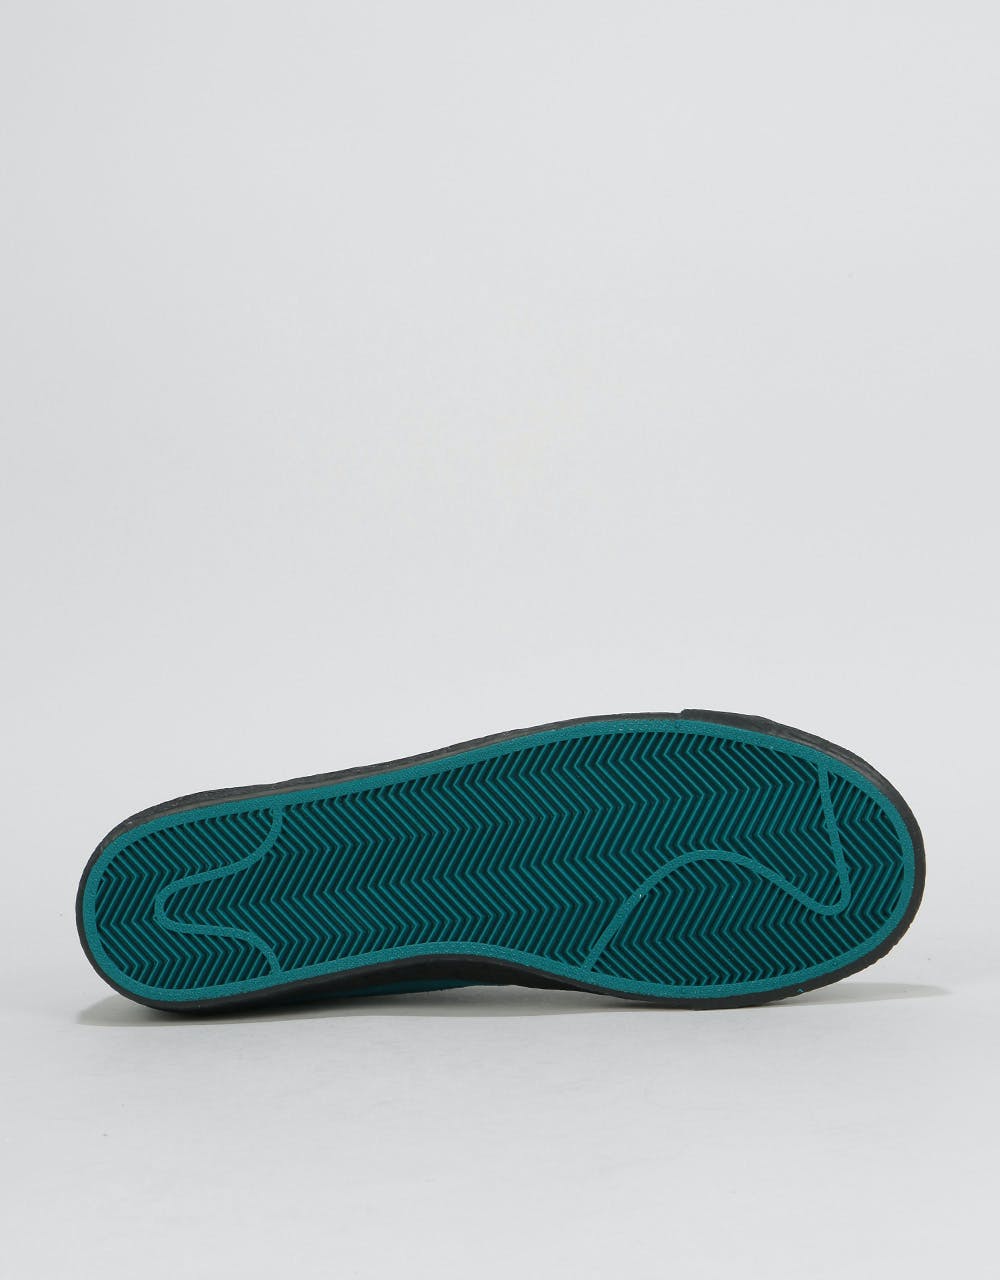 Nike SB Zoom Blazer Low Skate Shoes - Geode Teal/Geode Teal-Black